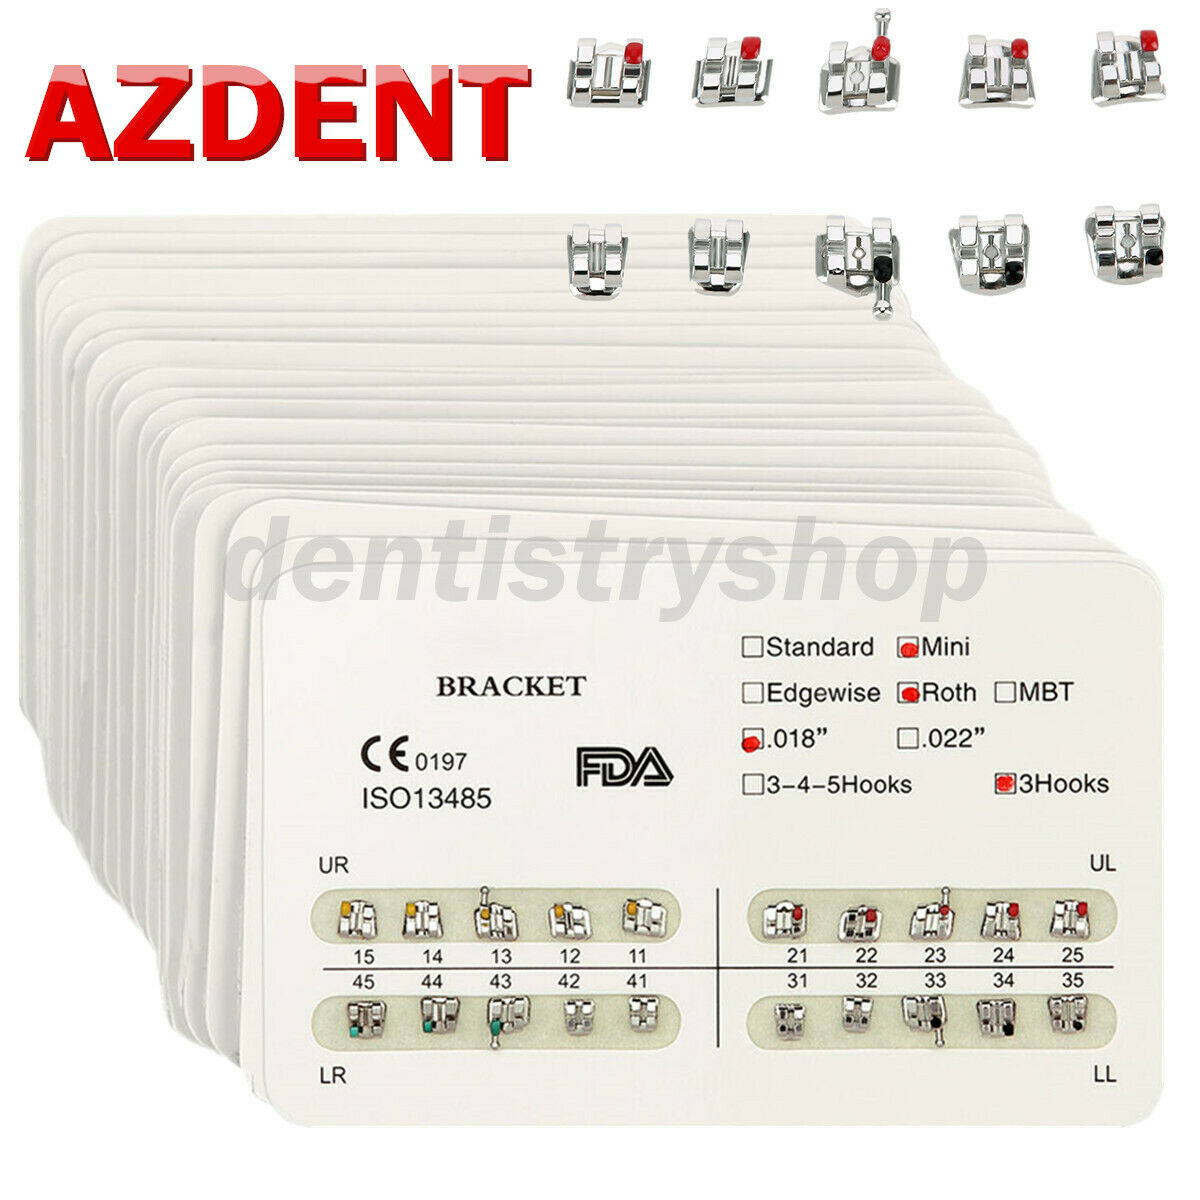 10packs Azdent Dental Brackets Mini/standard Mbt/roth 022/018 Hooks 3 4 5